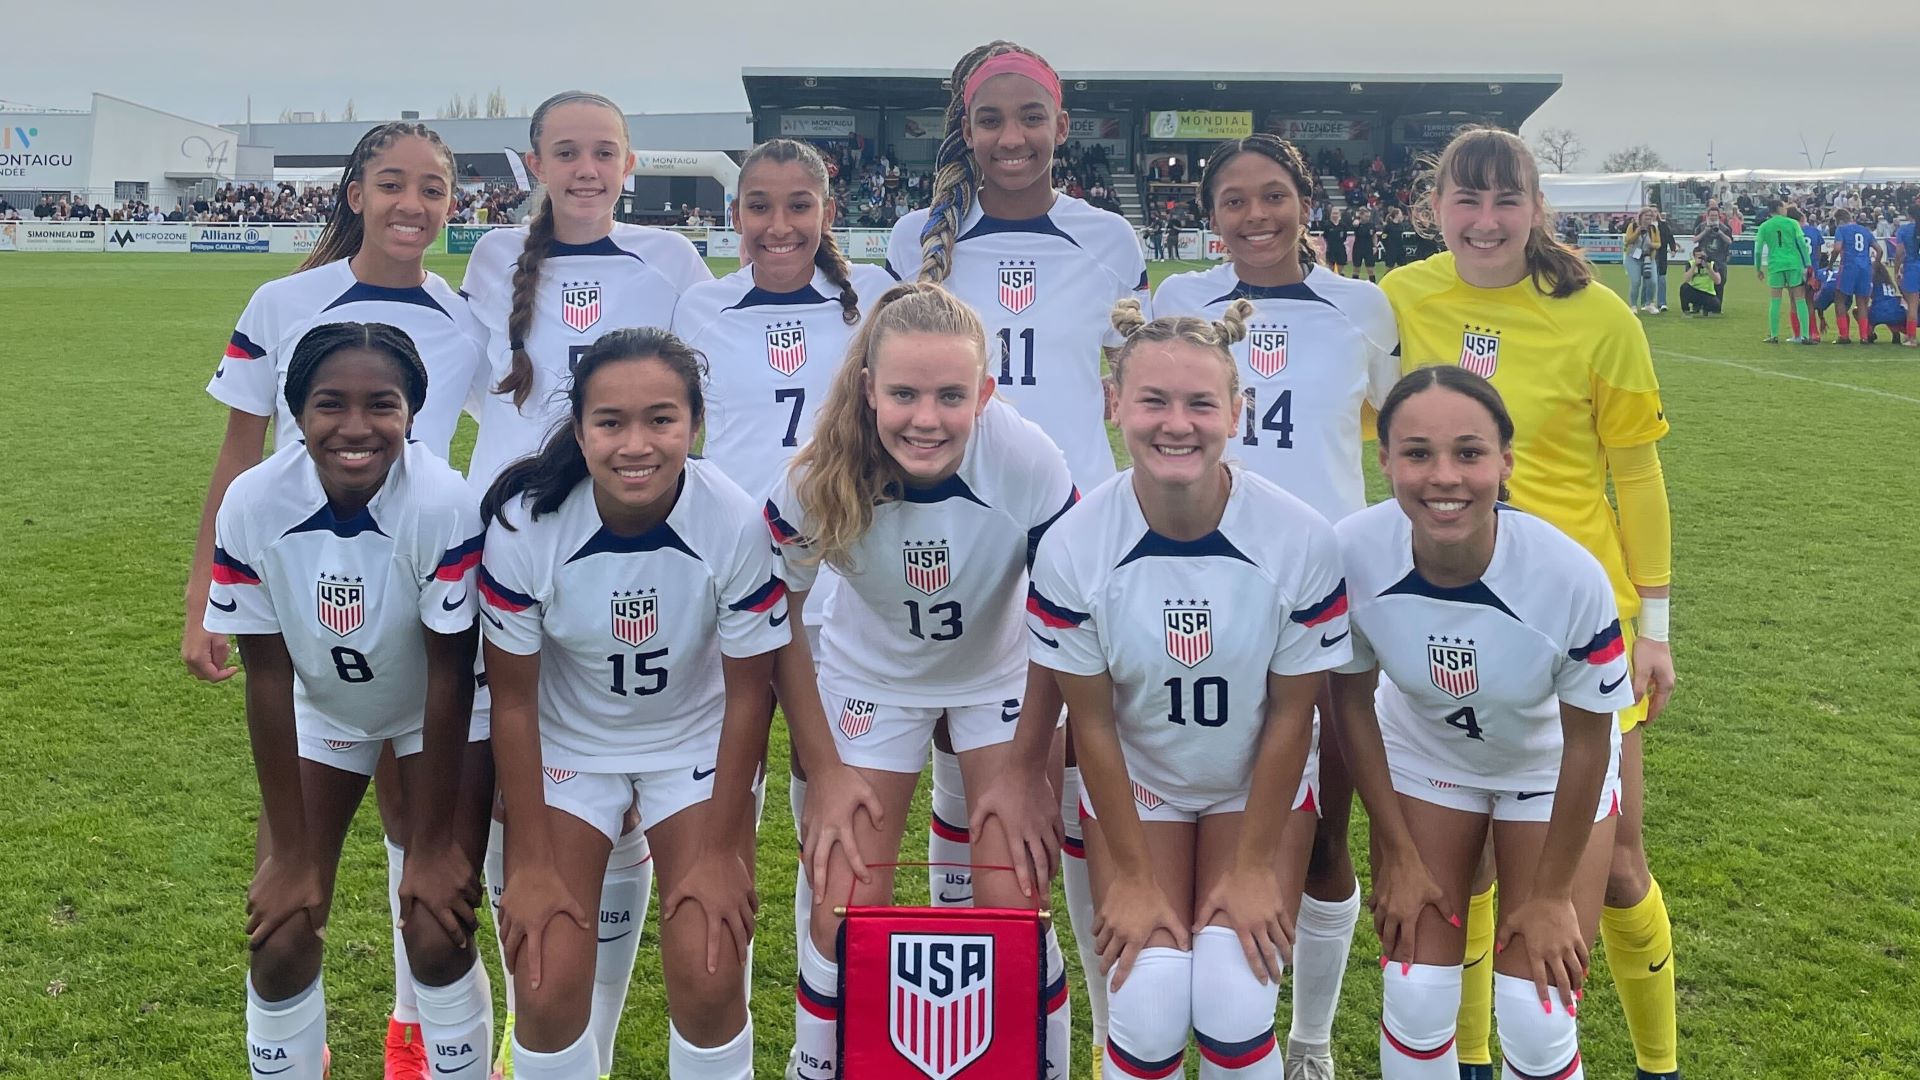 U.S. Under-16 Women's Youth National Team Wins Mondial Montaigu 